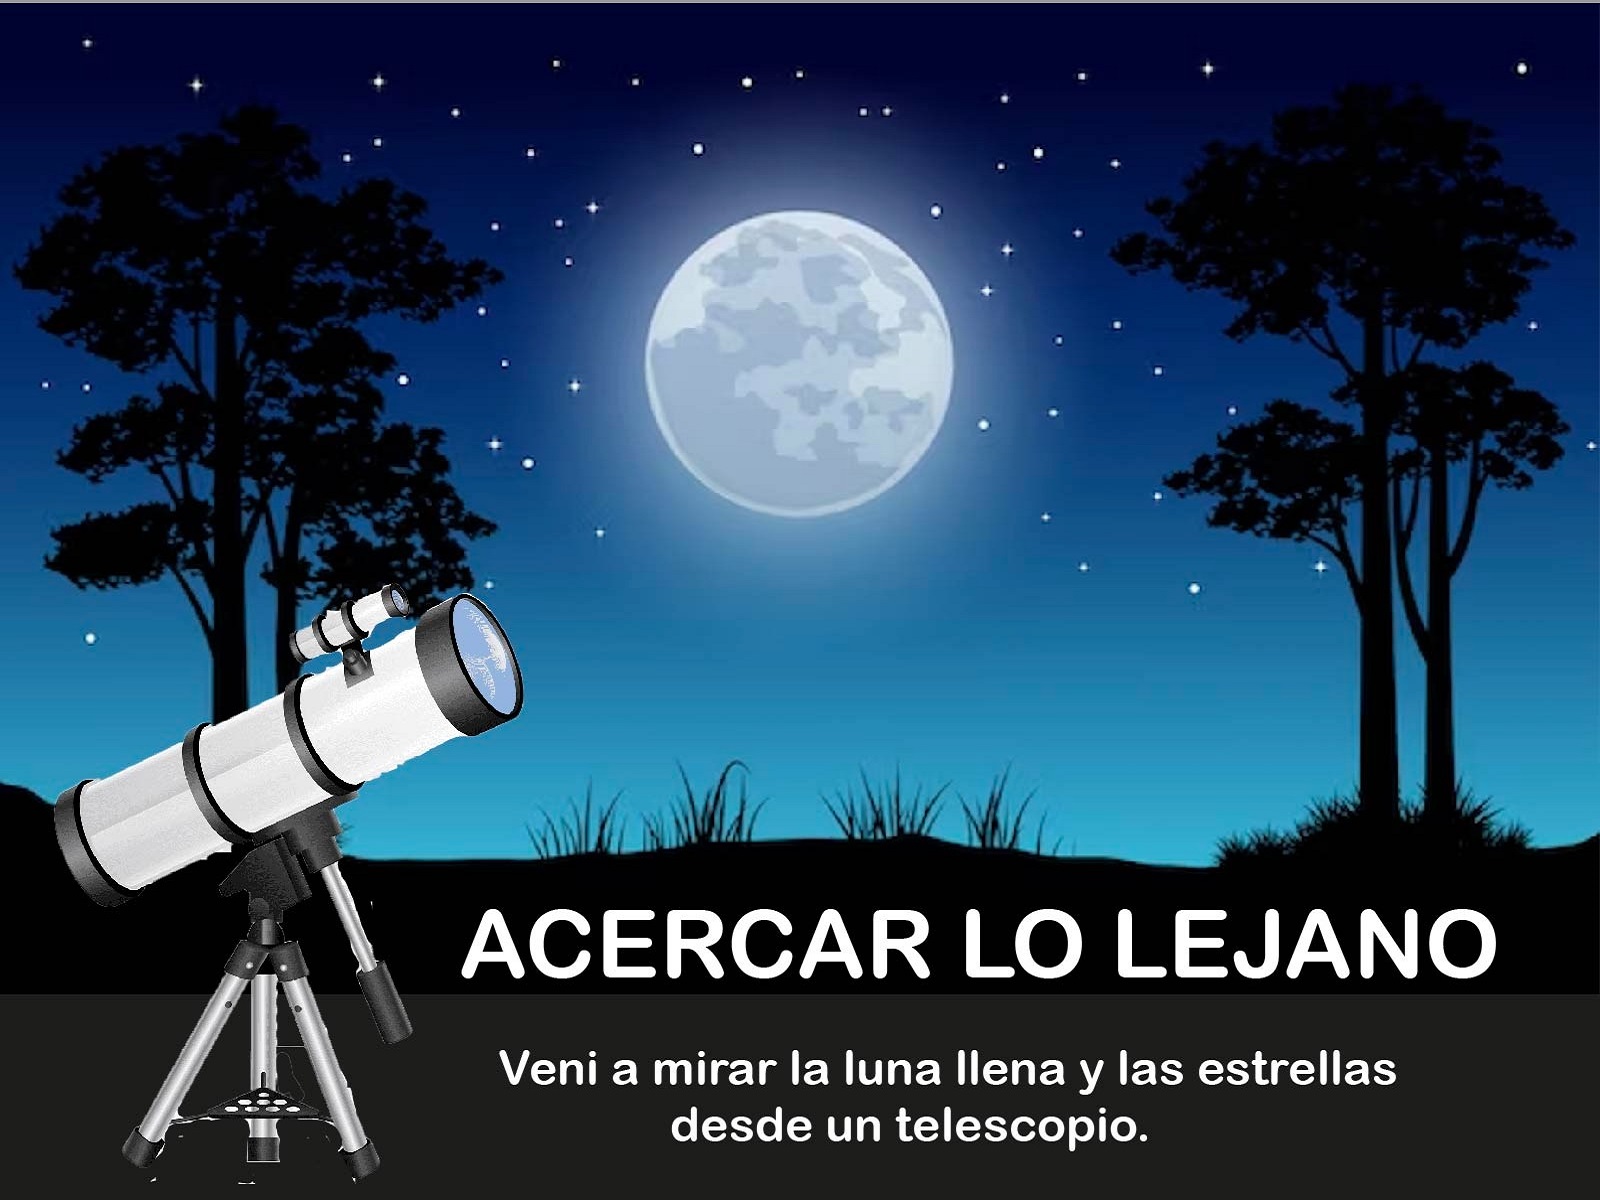 Se presentó “Acercar lo lejano”: Propuesta para ver la luna llena desde un telescopio